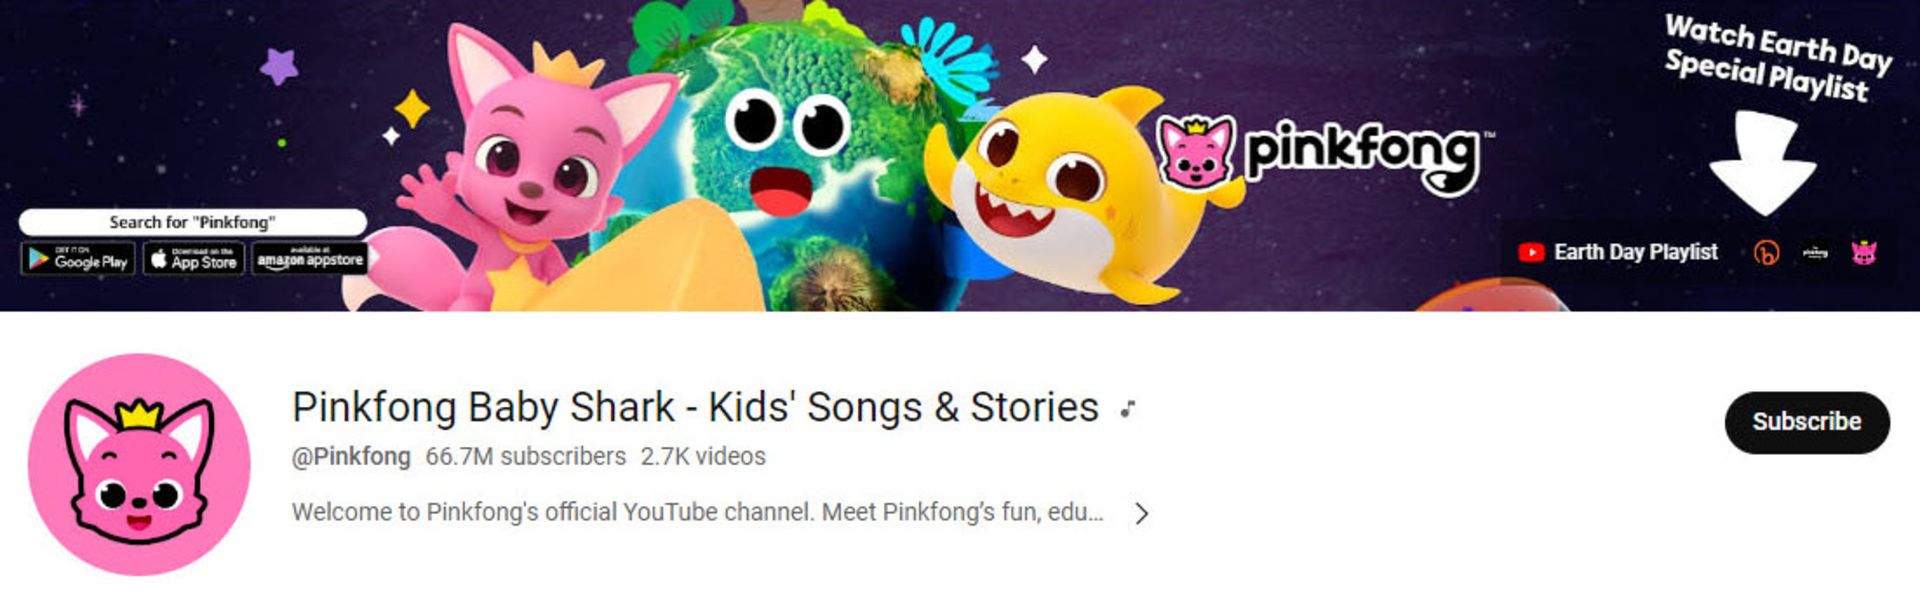 کانال یوتیوب Pinkfong Baby Shark